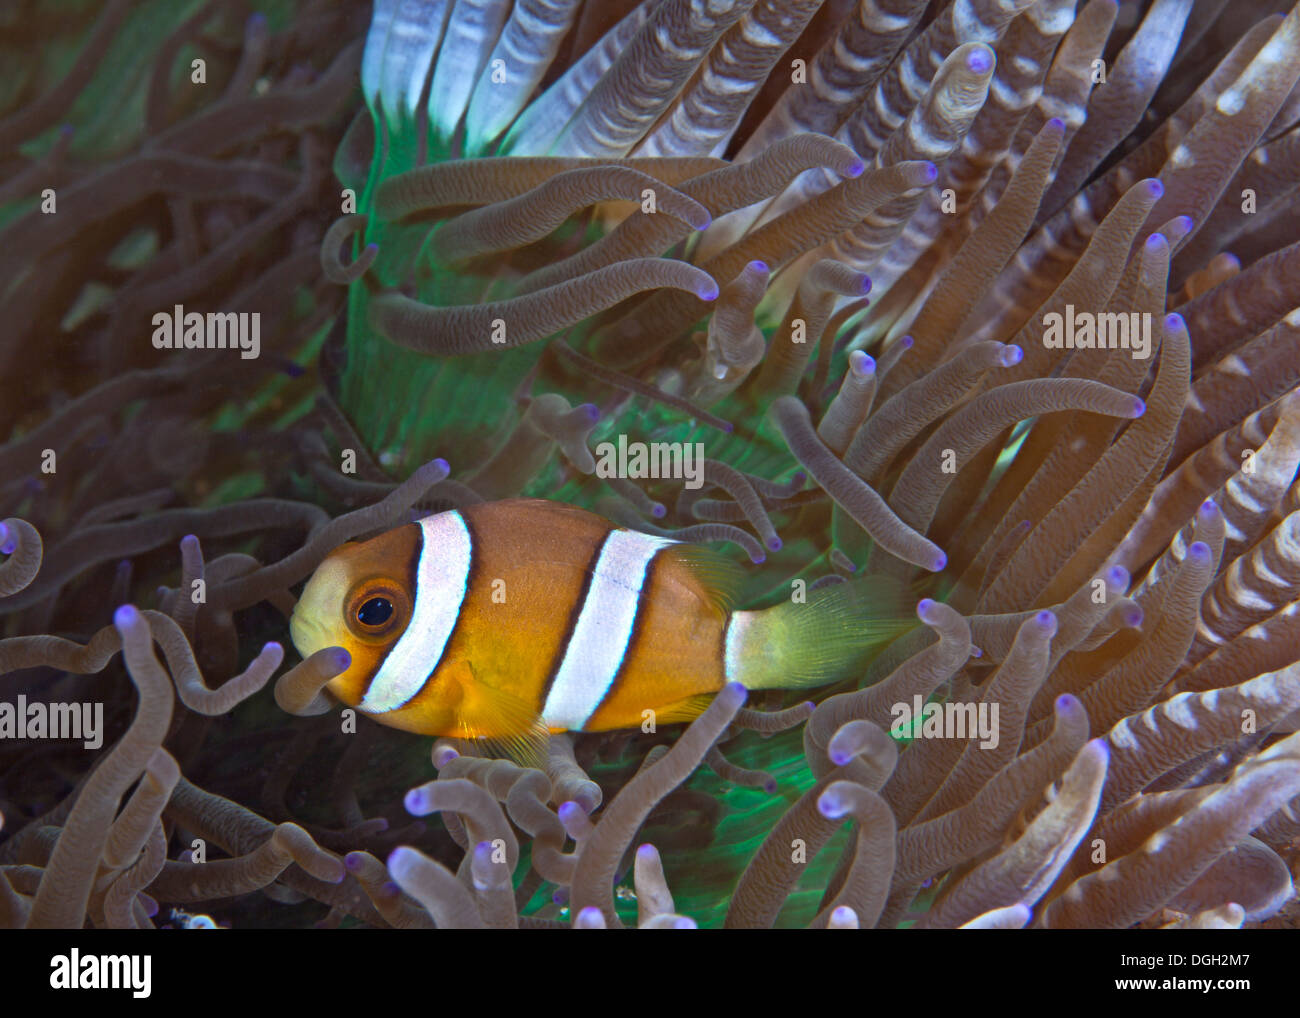 Orangefarbene Clownfische in grün und lila Perle-Tentakel Anemone. Stockfoto